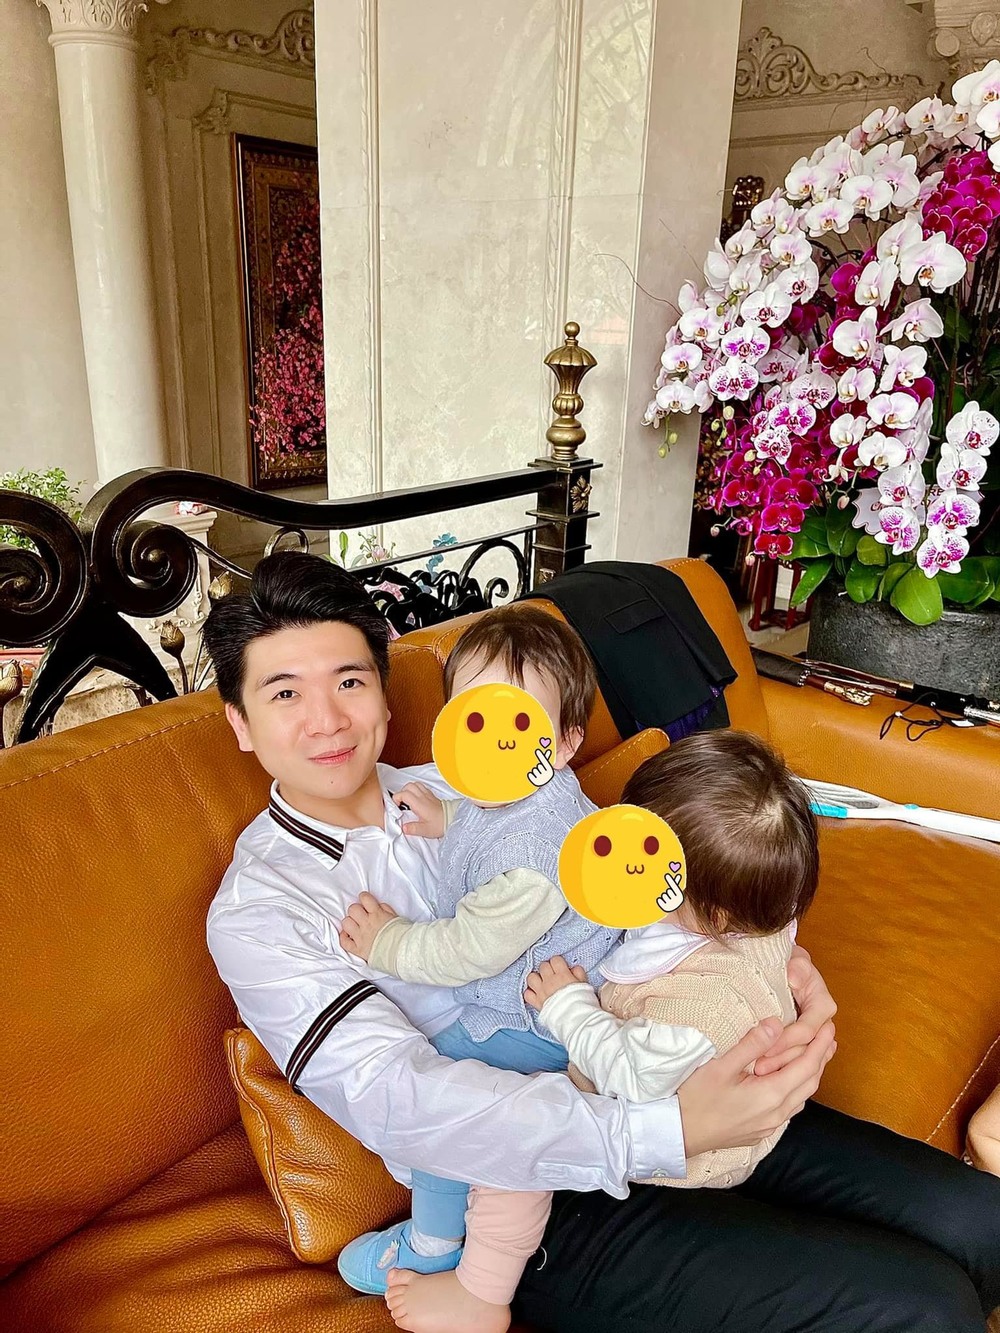  
Đỗ Quang Vinh hiện là bố đơn thân của cặp song sinh một bé trai và một bé gái. (Ảnh: FBNV)